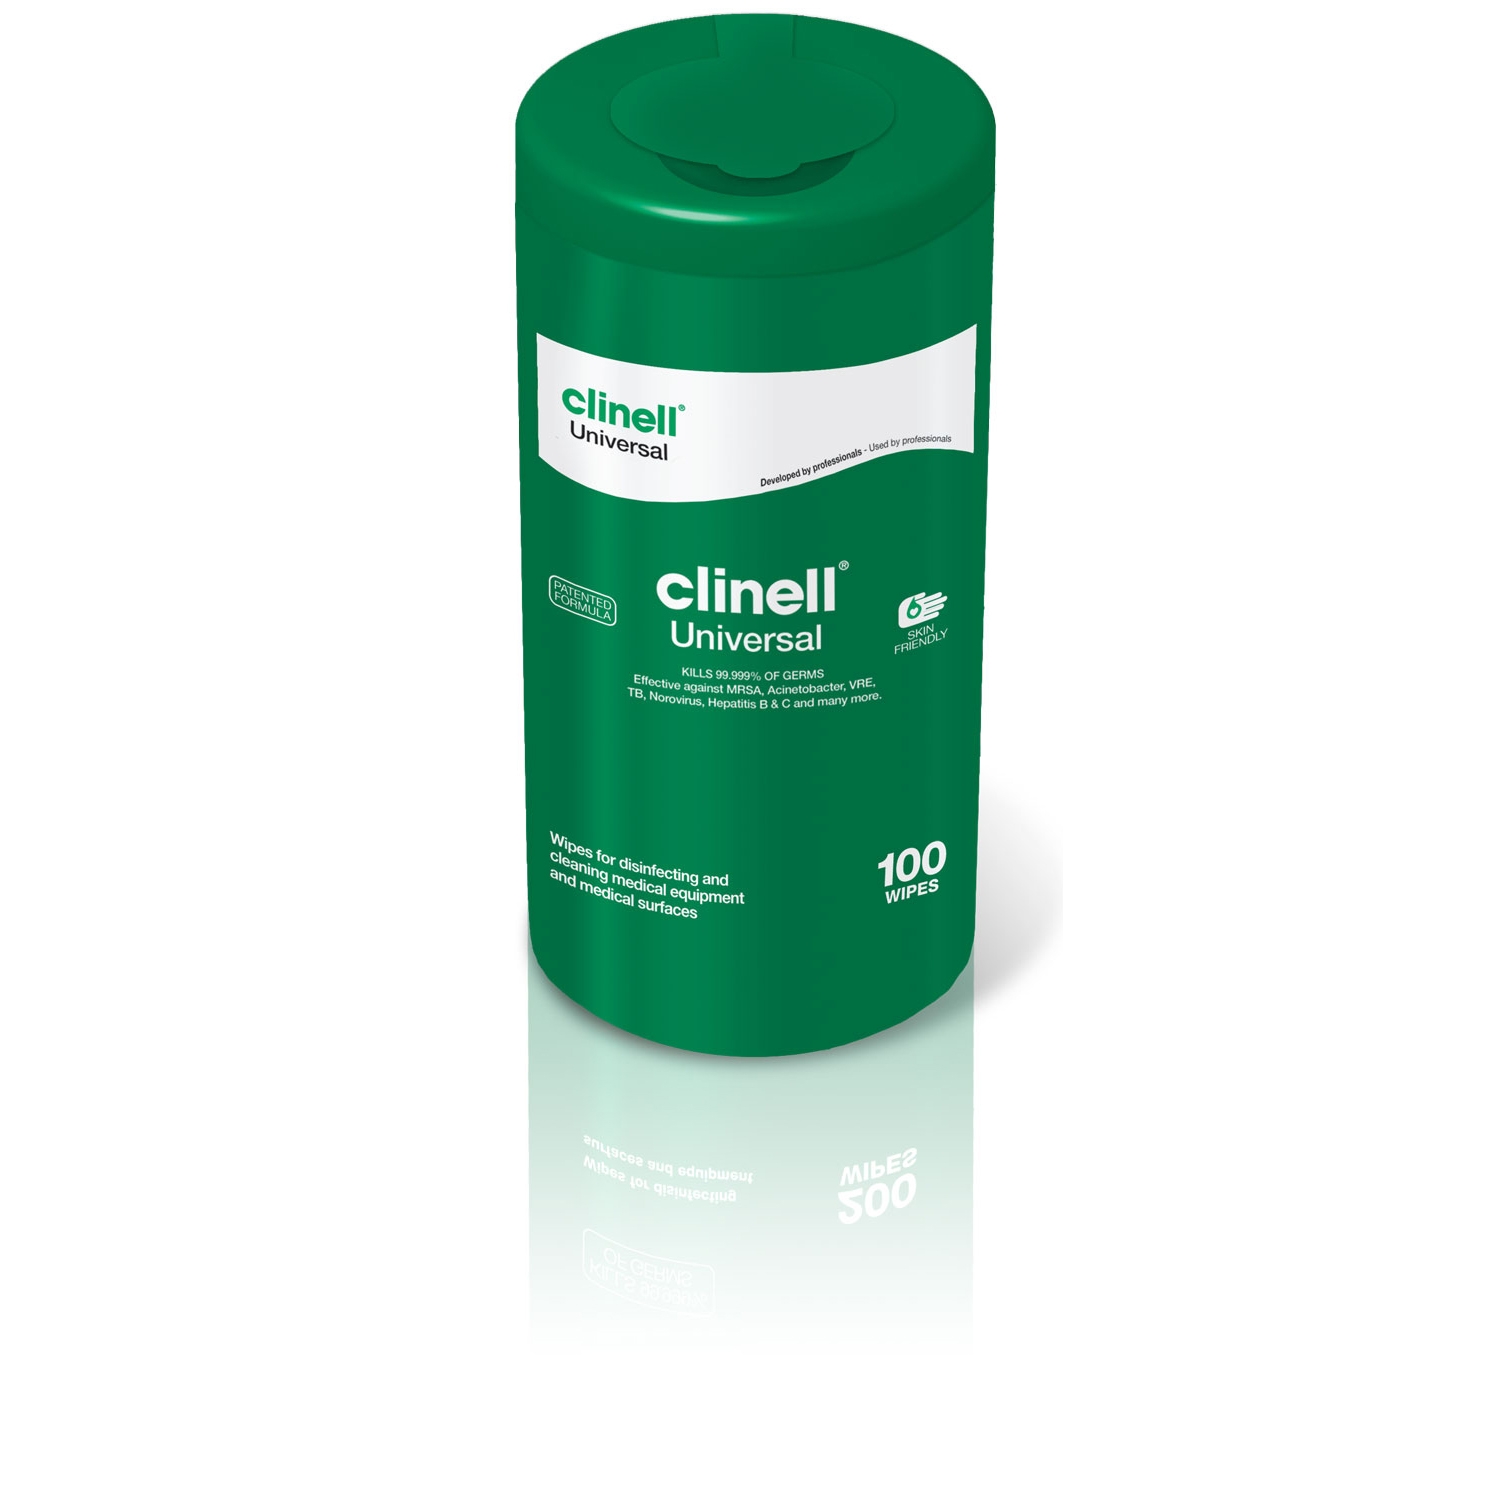 Clinell Universal desinfectiedoekjes medische oppervlakken - alcoholvrij in refill-koker (100 st)